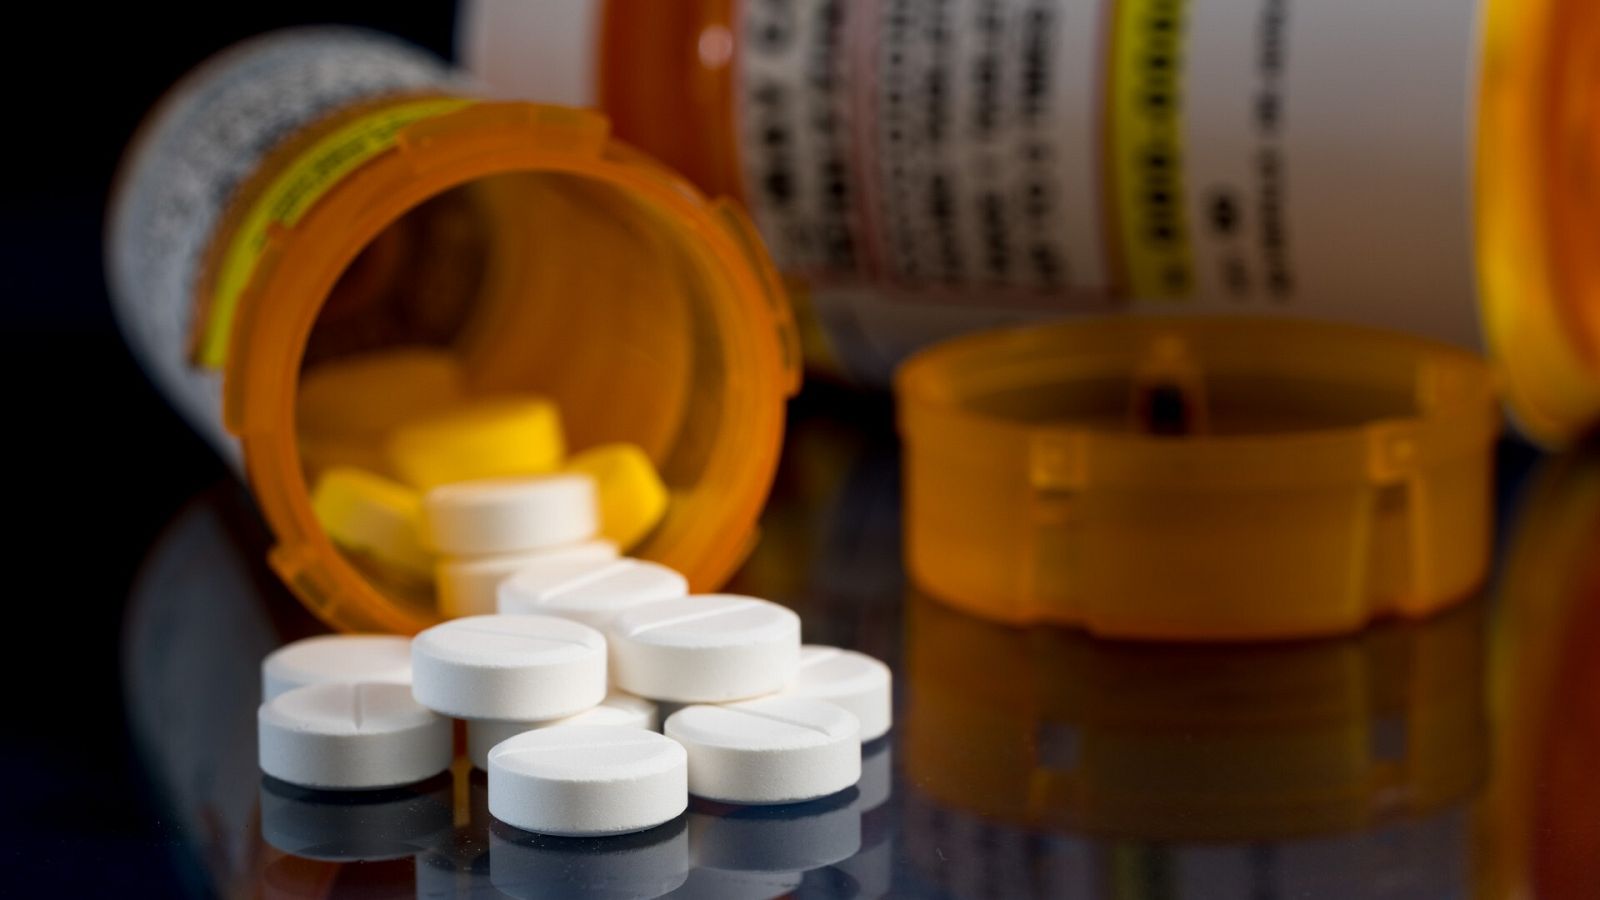 Varias farmacéuticas deberán pagar 650 millones de dólares a dos condados de Ohio por la crisis de opioides